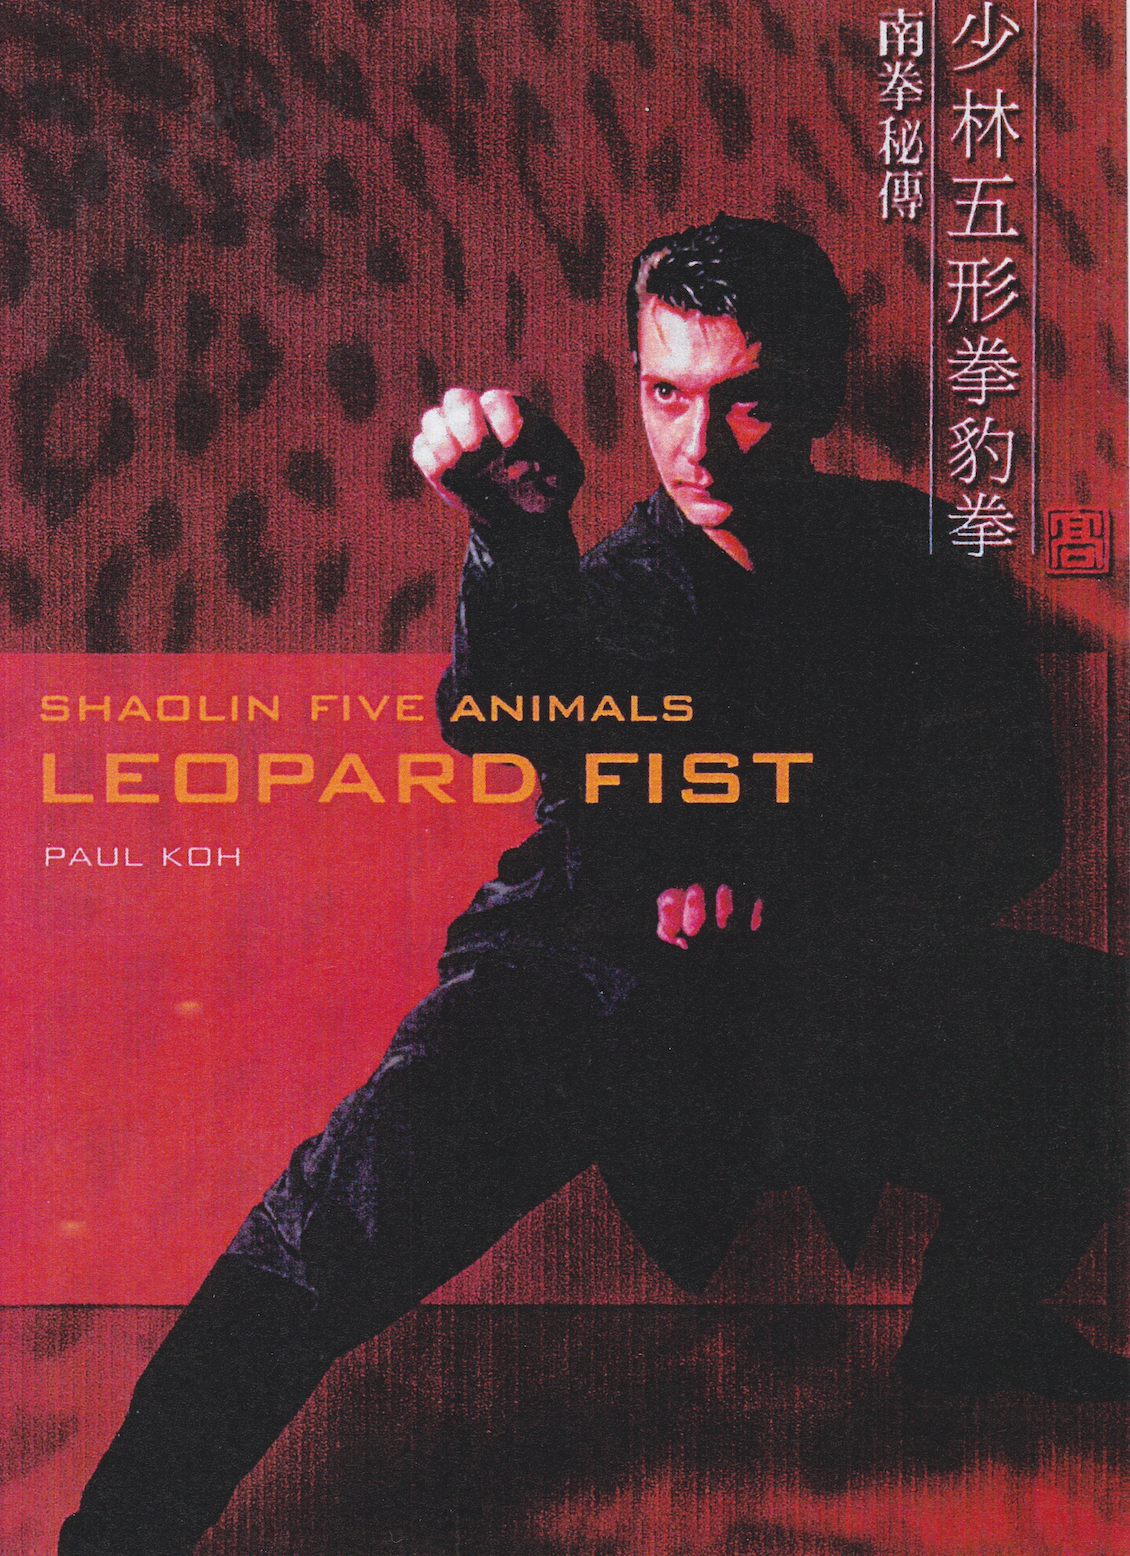 Shaolin Five Animals Leopard Fist DVD by Paul Koh